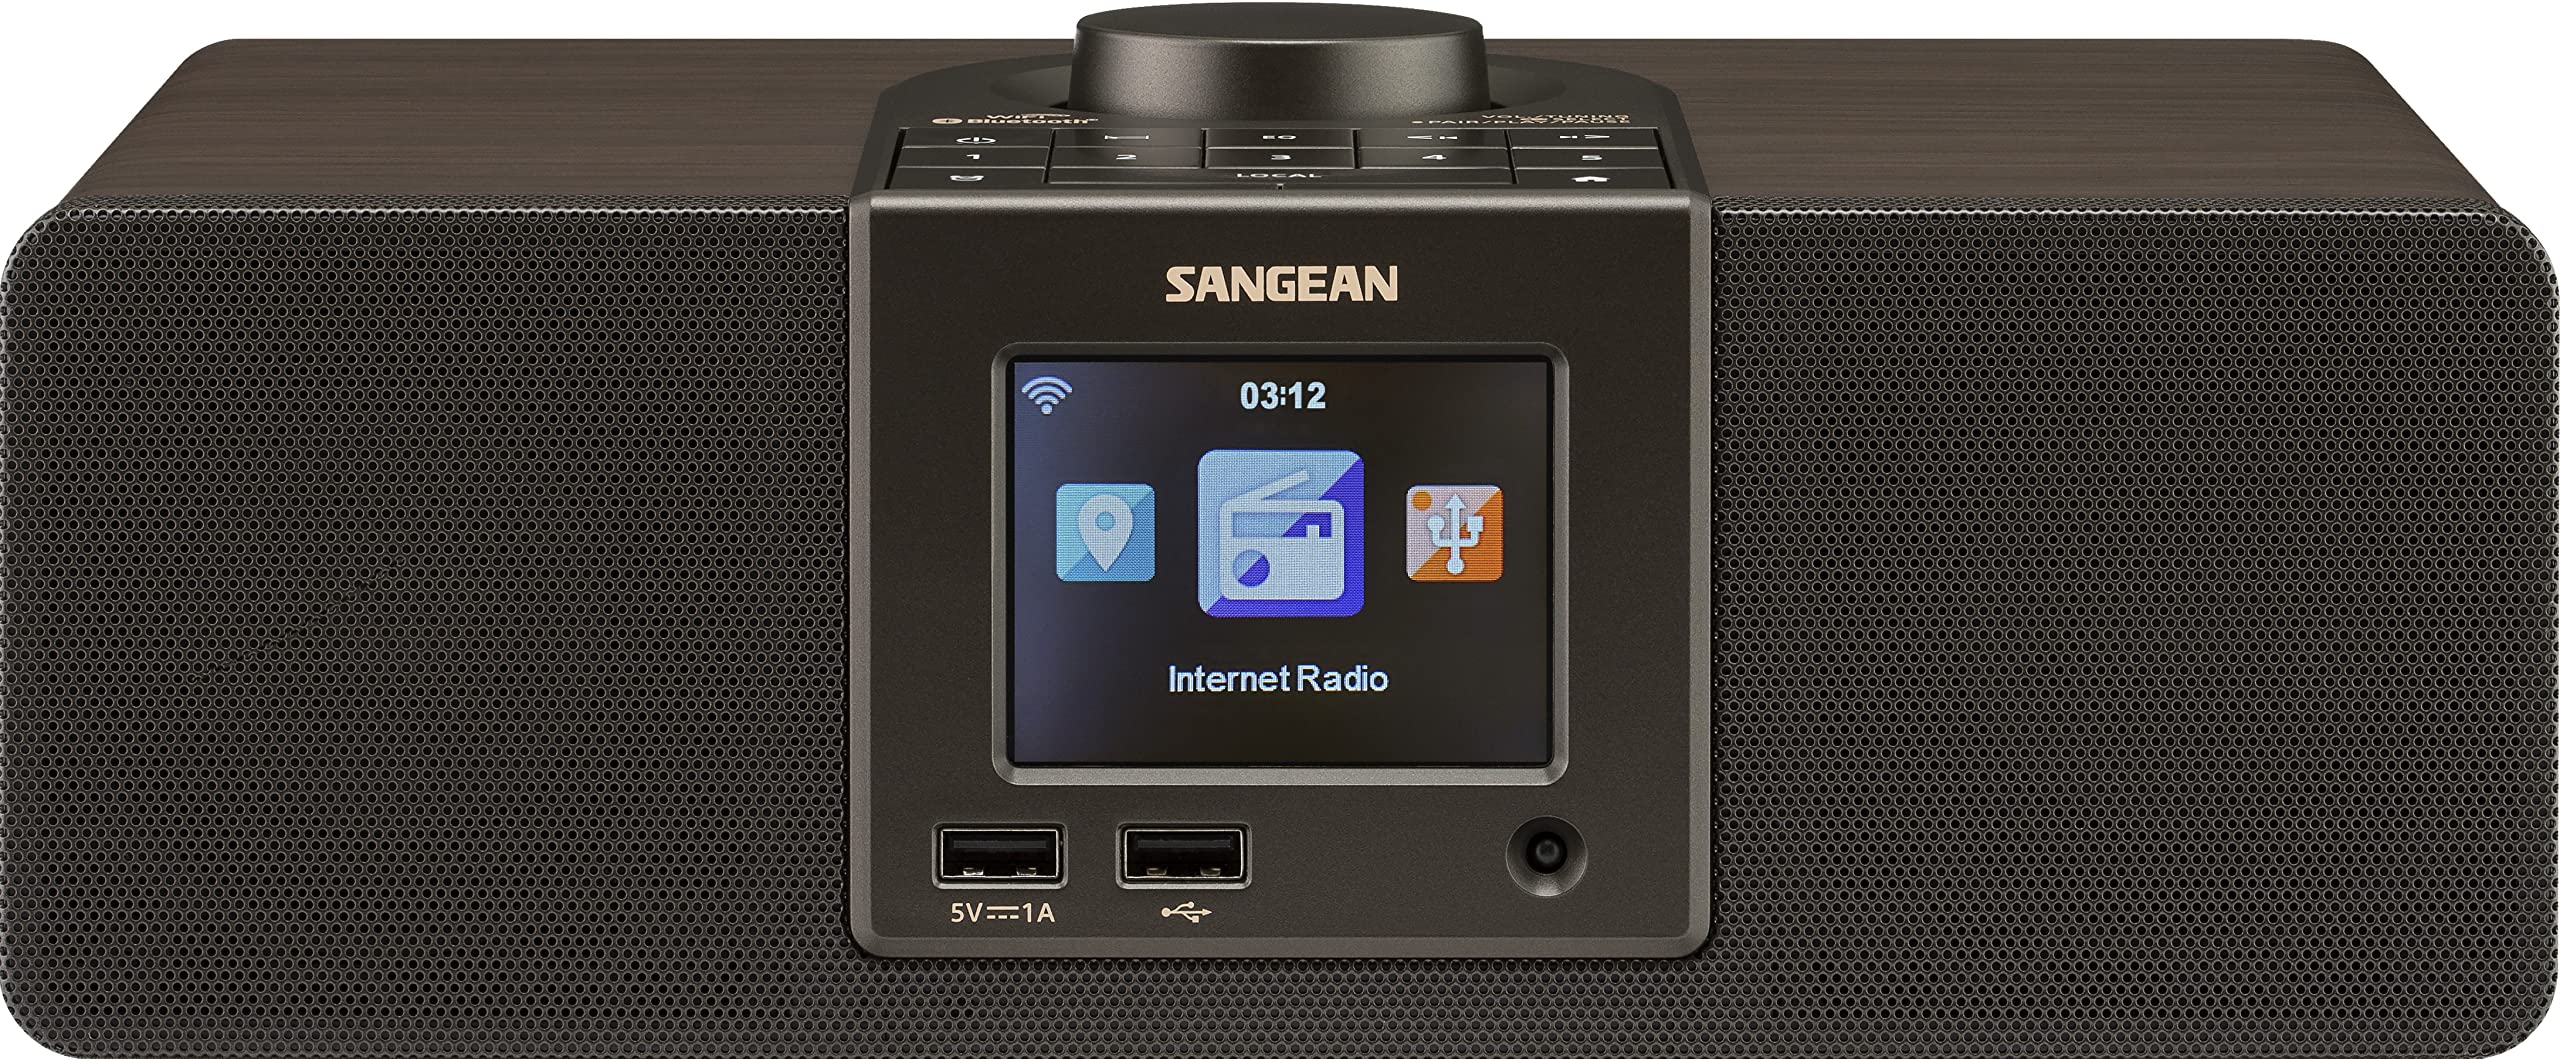 Sangean WFR-32 7 ワット ステレオ木製キャビネット Wi-Fi インターネット ラジオ メディア センター (Bluetooth 付き)